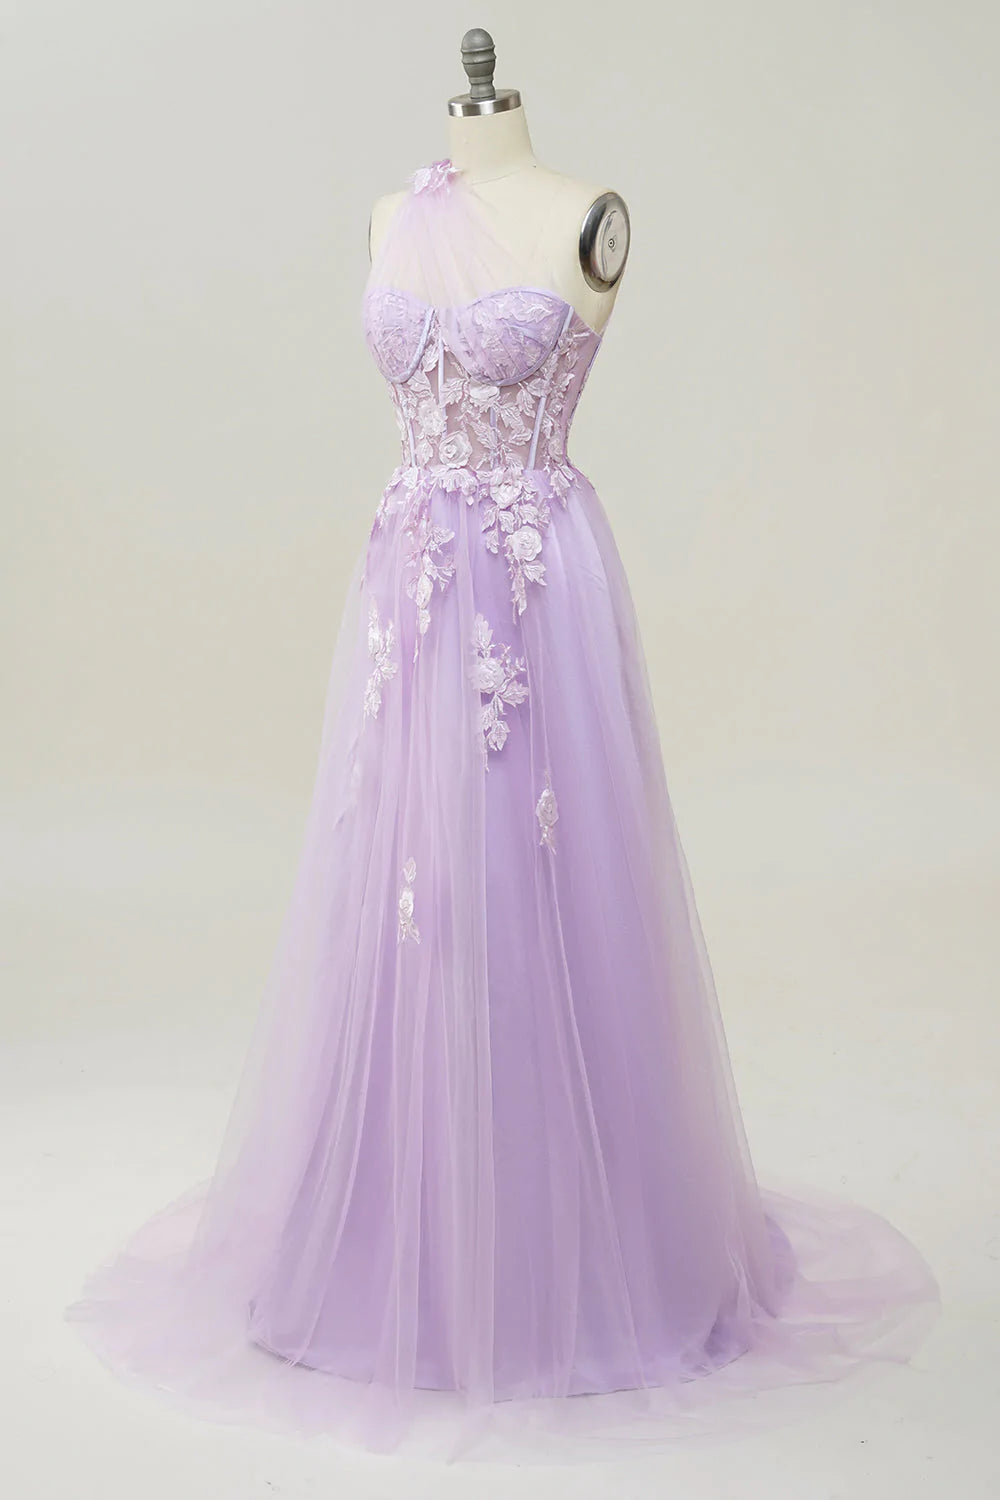 purple long dress